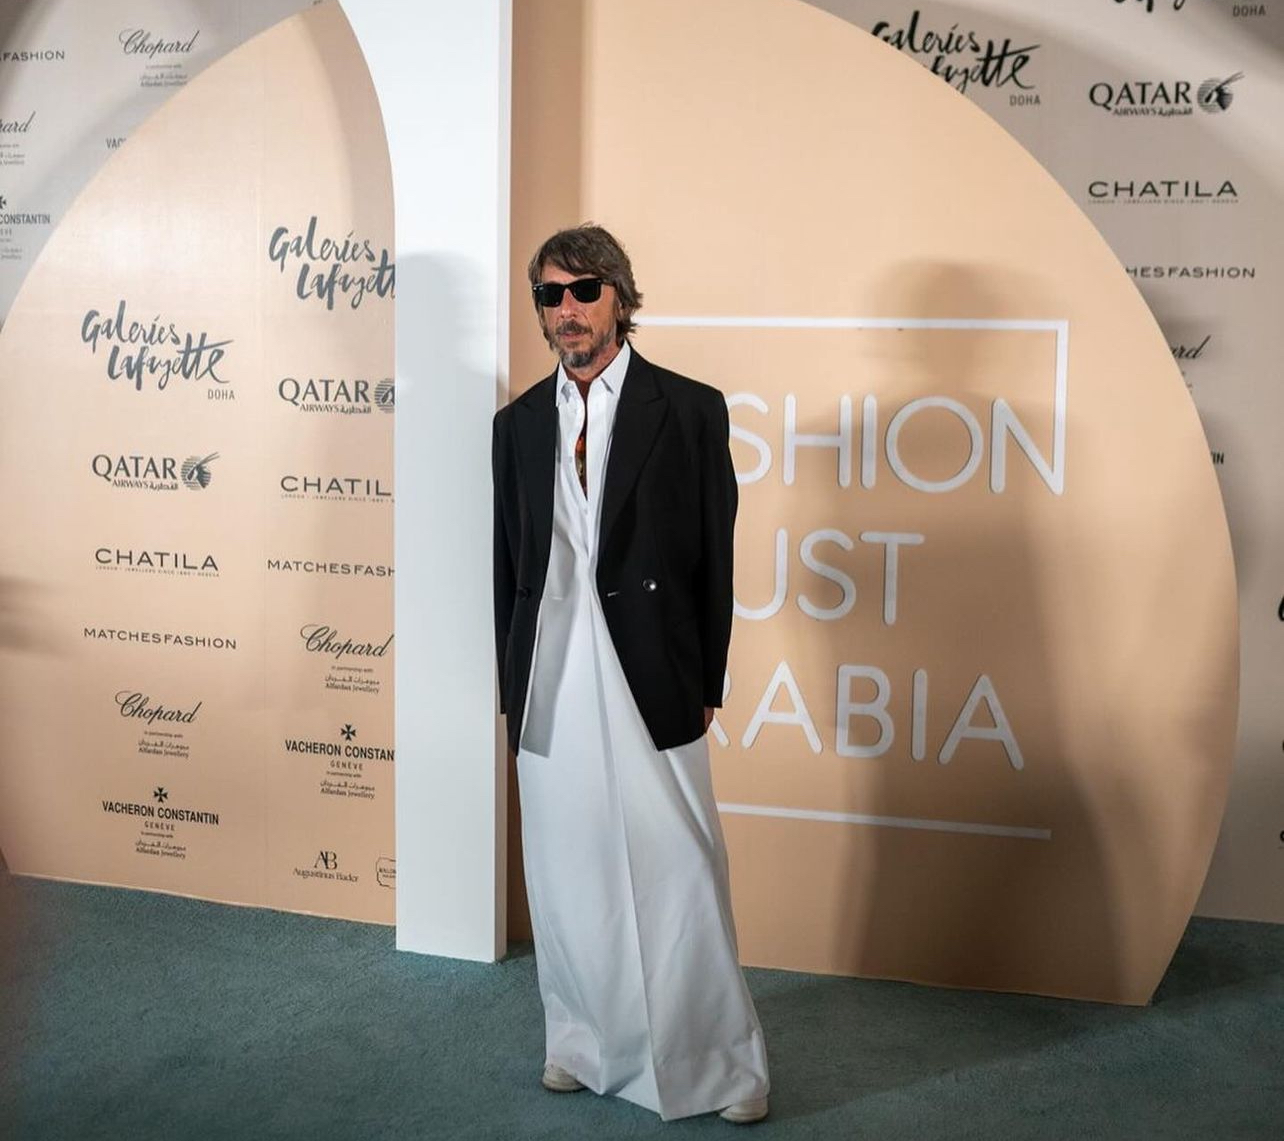 Sheikha Al Mayassa, Fashion Trust Arabia react to Pierpaolo Piccioli’s Valentino departure